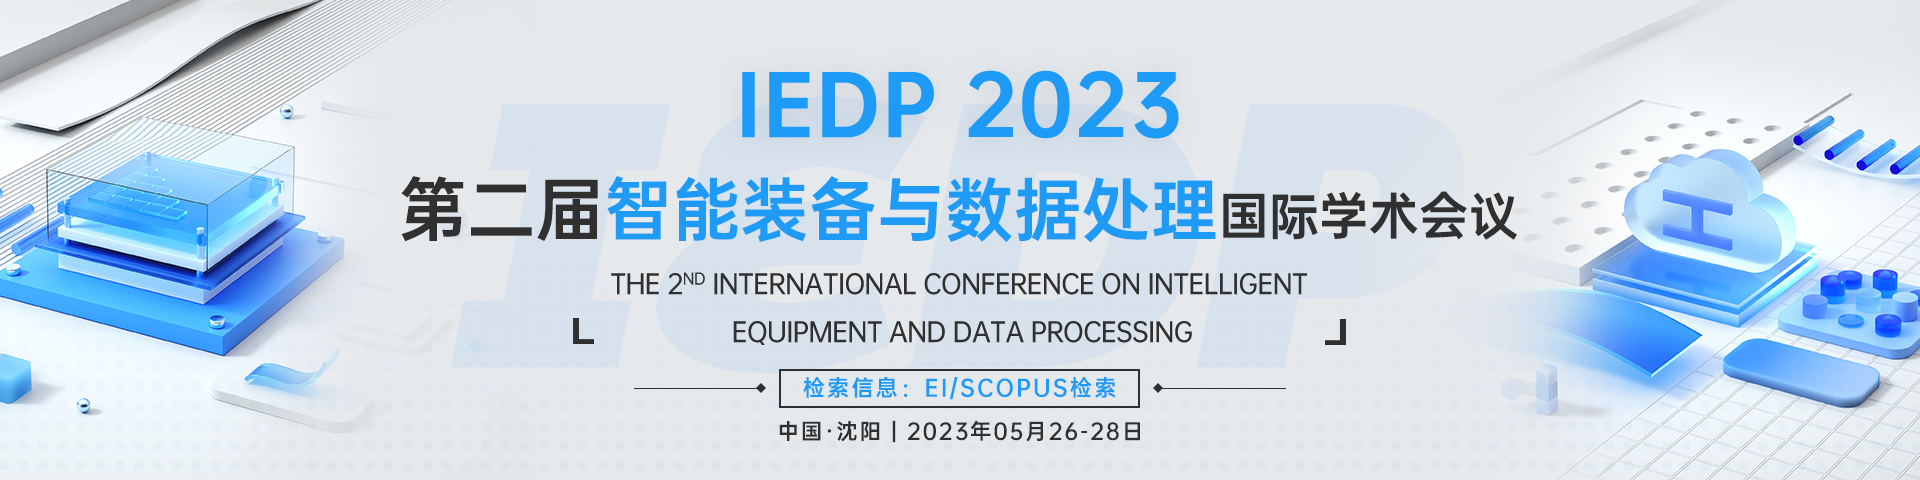 5月沈阳-IEDP 2023会议官网banner1-20221115.png